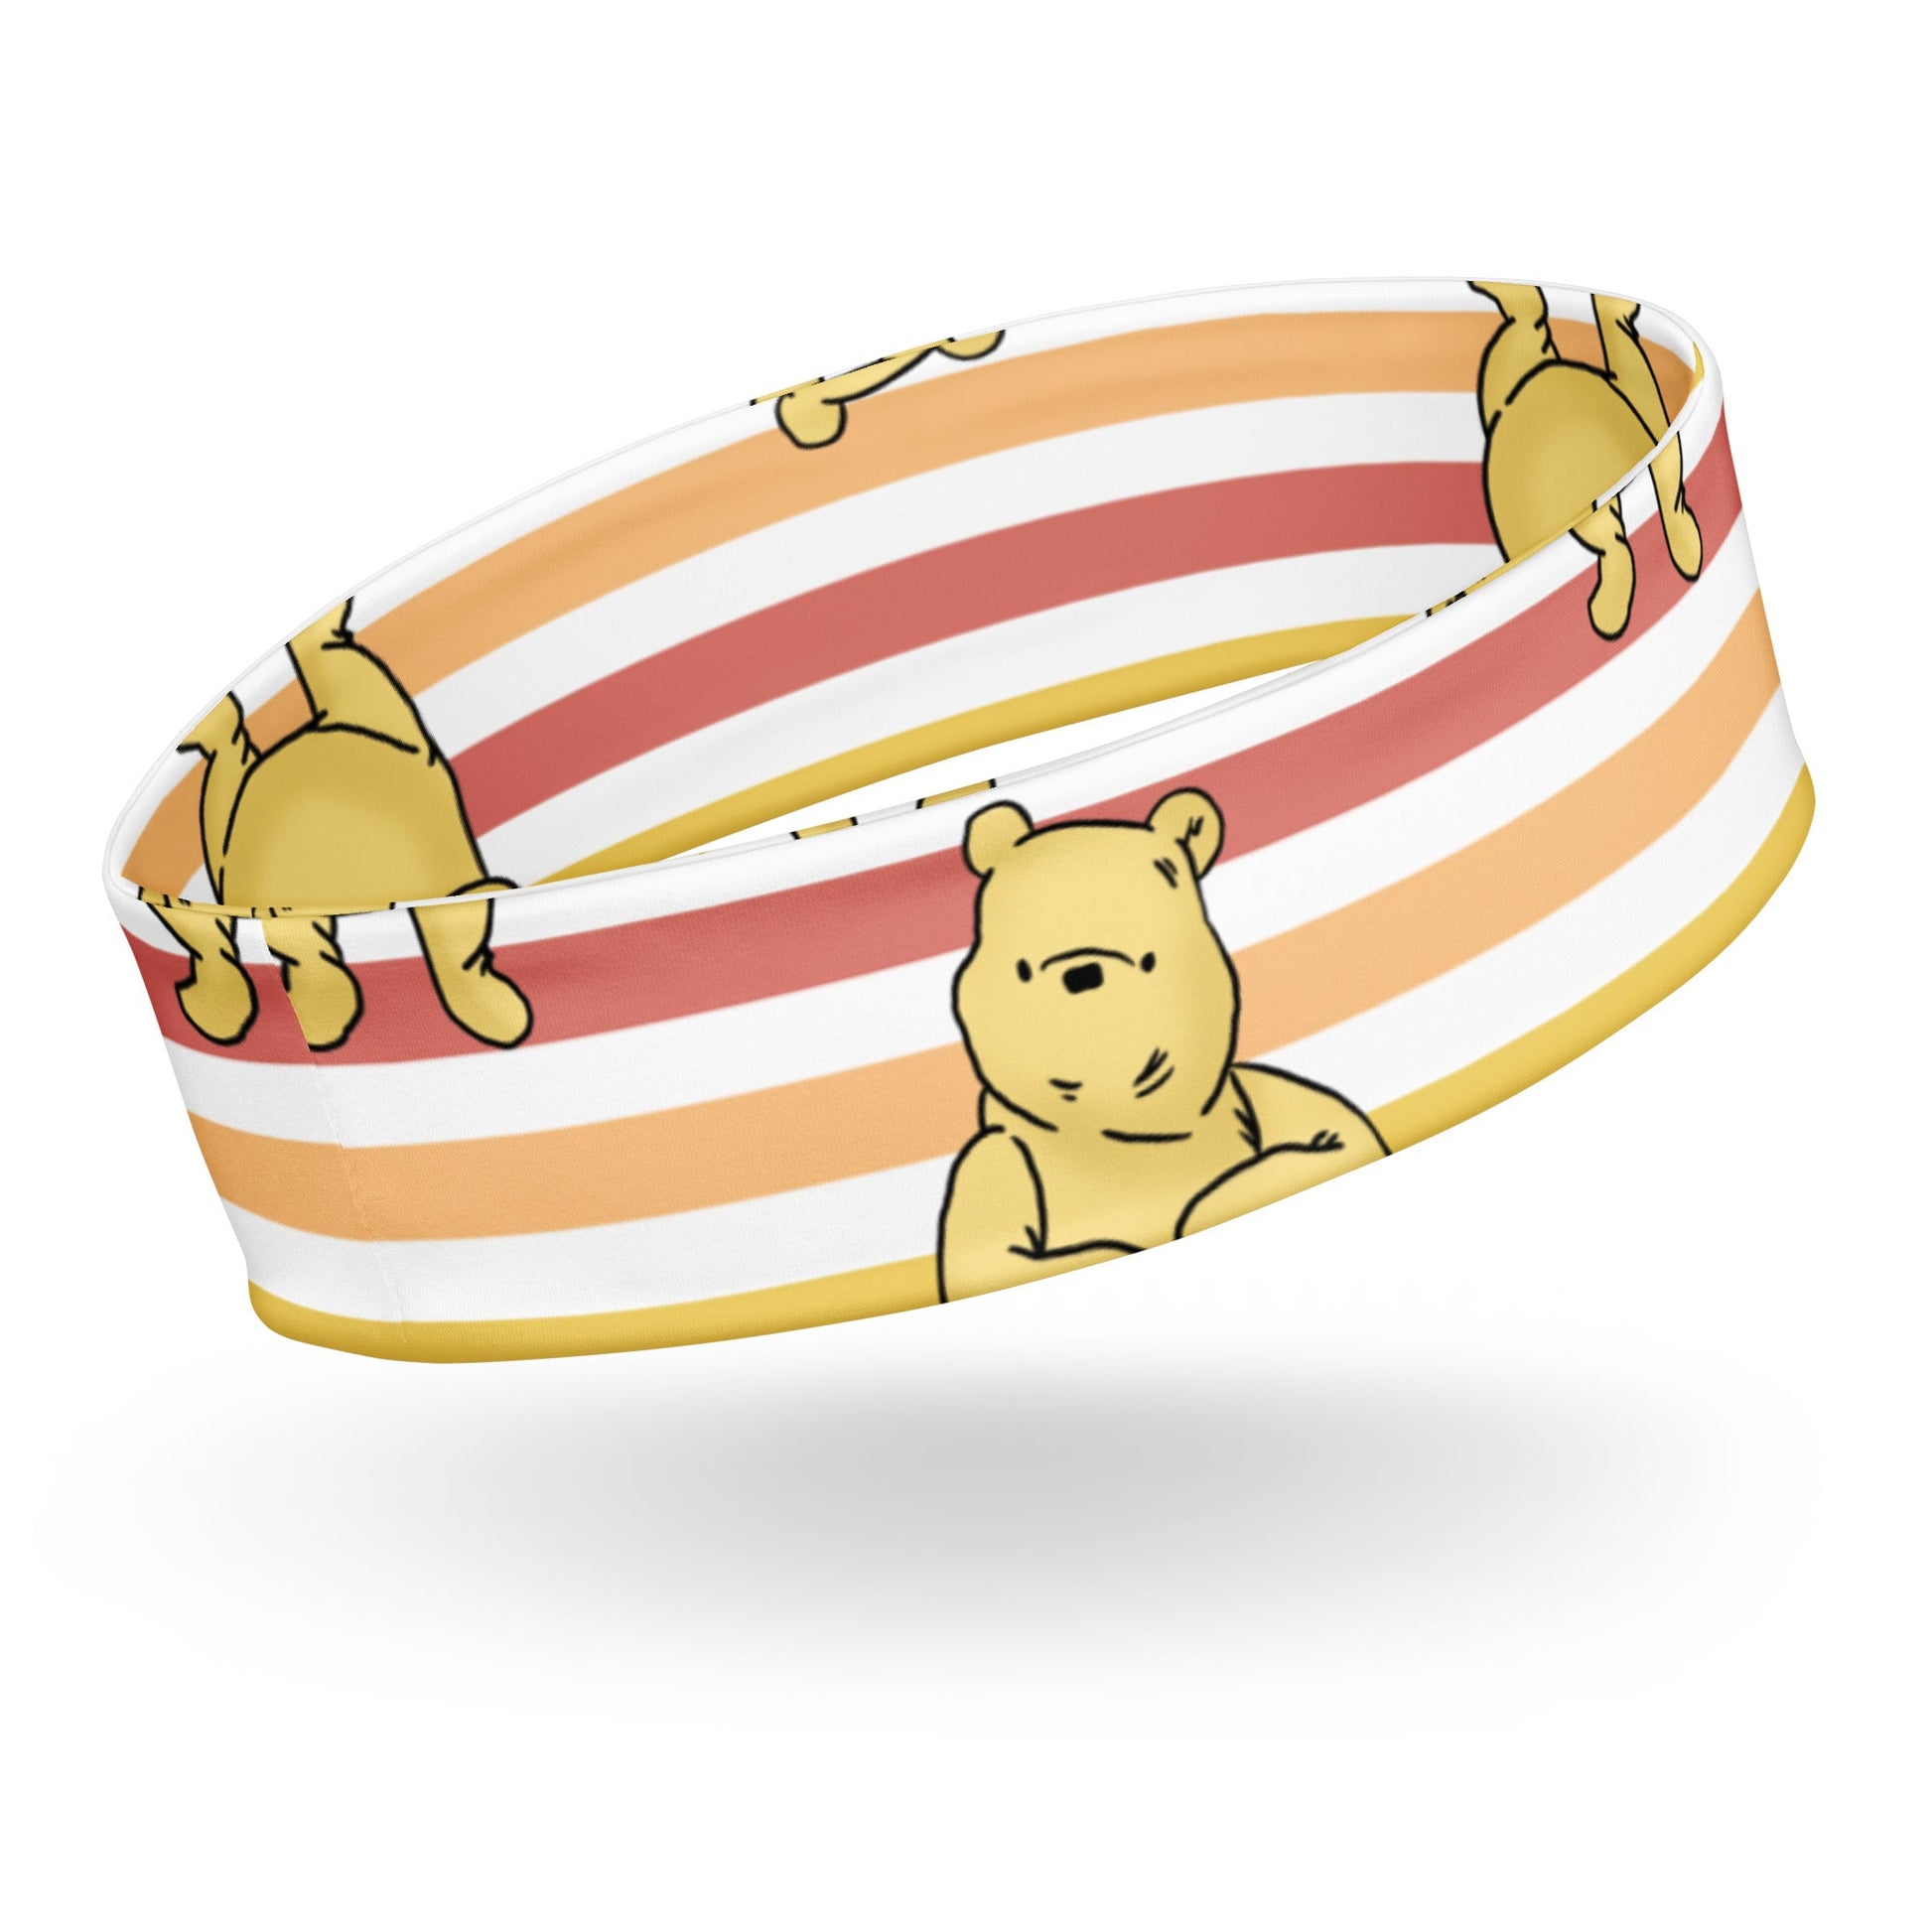 Pooh Stripes Headband adult disneyadult disney clothingWrong Lever Clothing